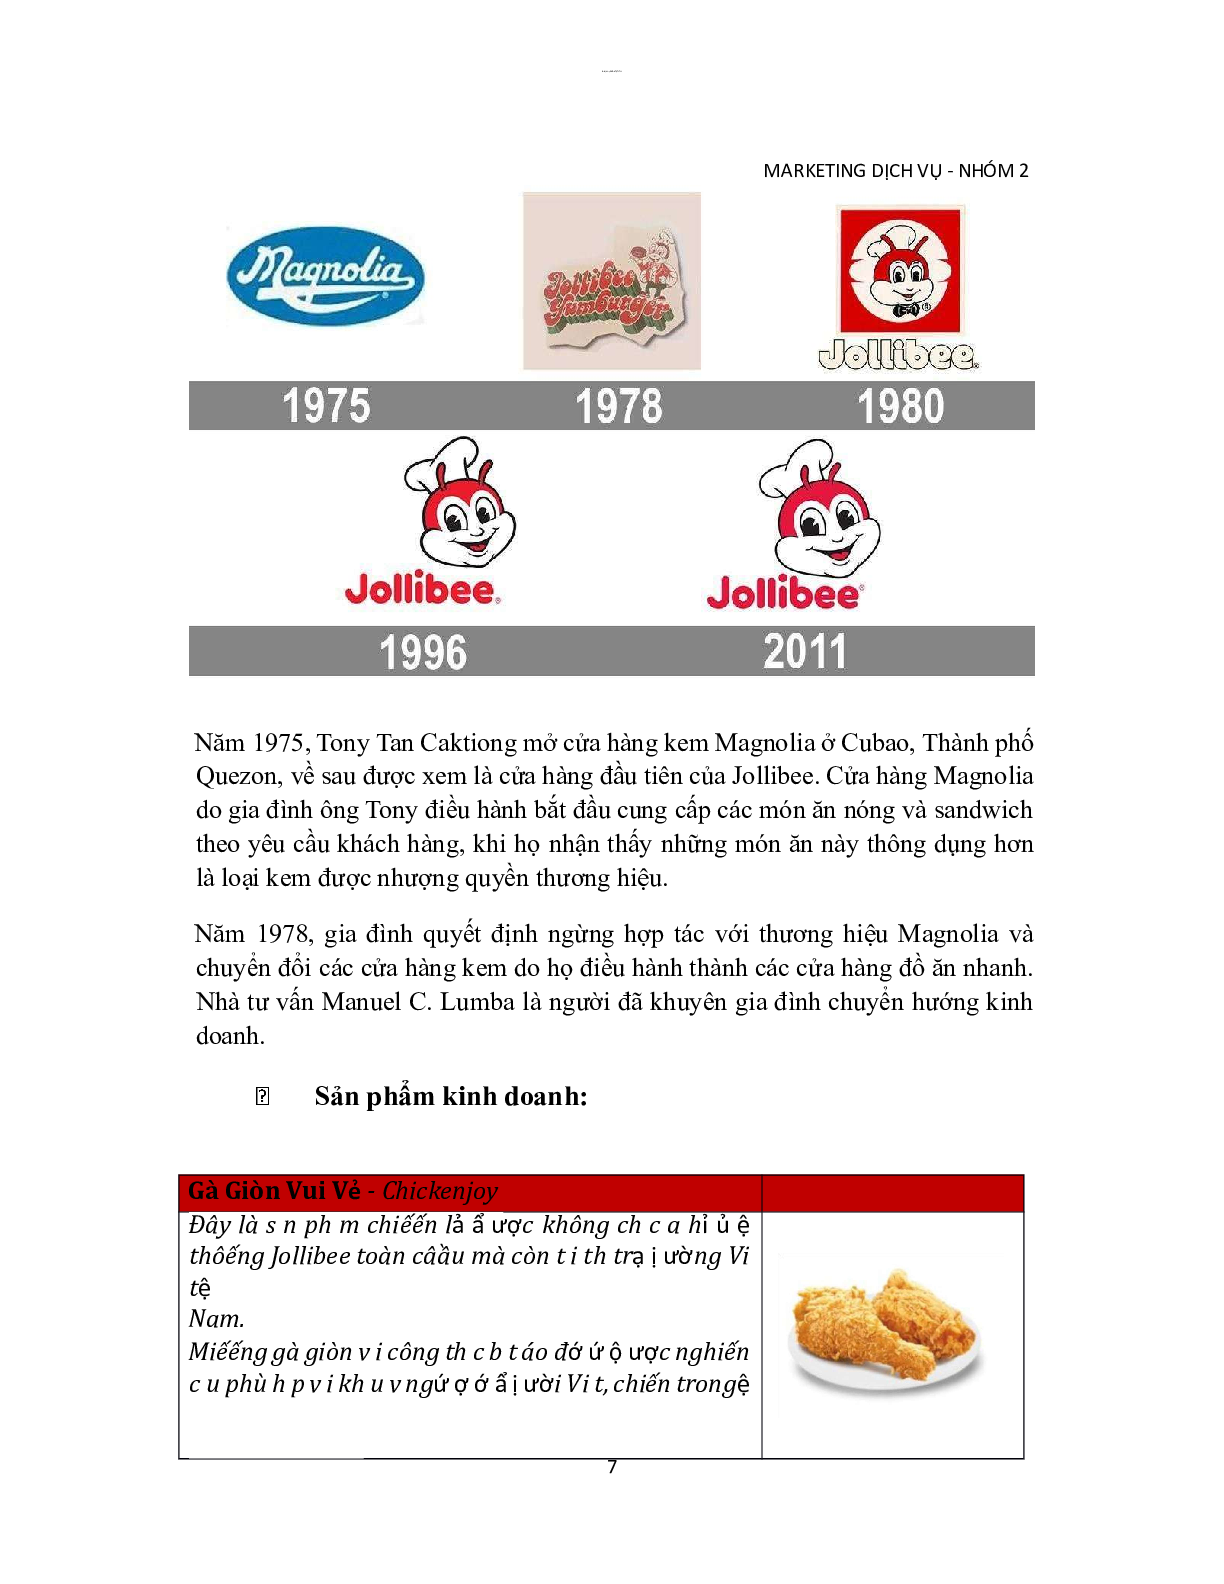 Jollibee - Giải pháp marketing dịch vụ ăn uống | Tiểu luận môn Marketing dịch vụ | PTIT (trang 7)